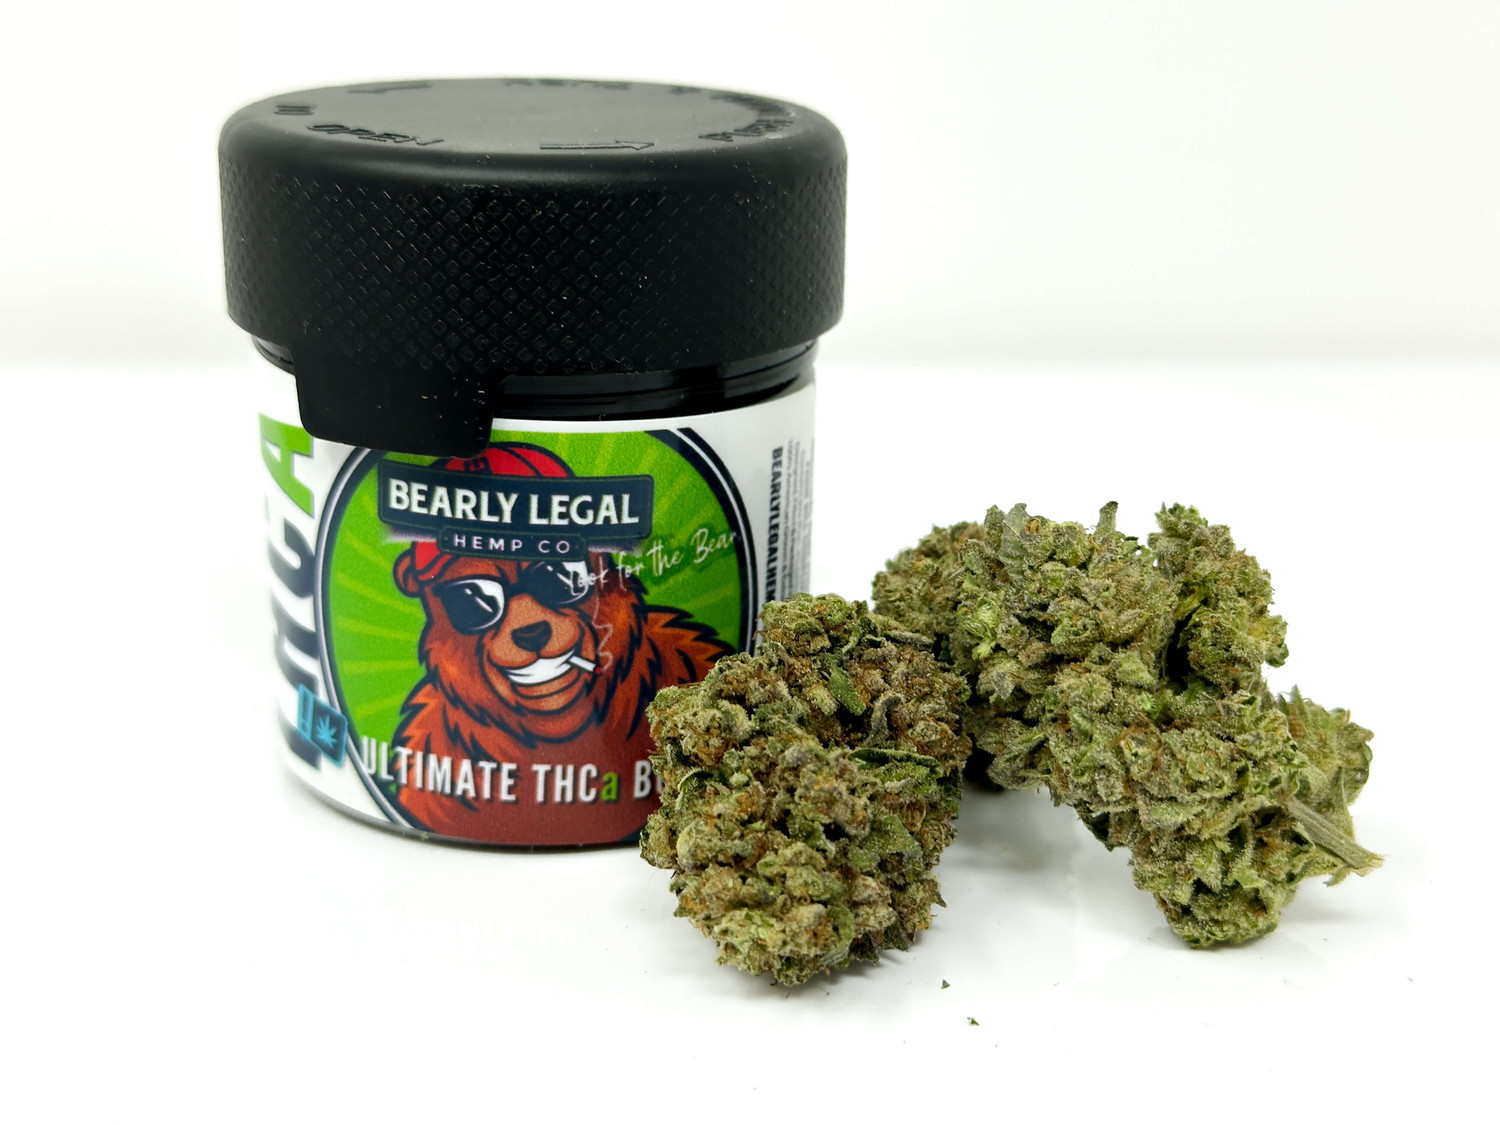 Dosilato hemp buds: High-THCa for ultimate smoking experience.